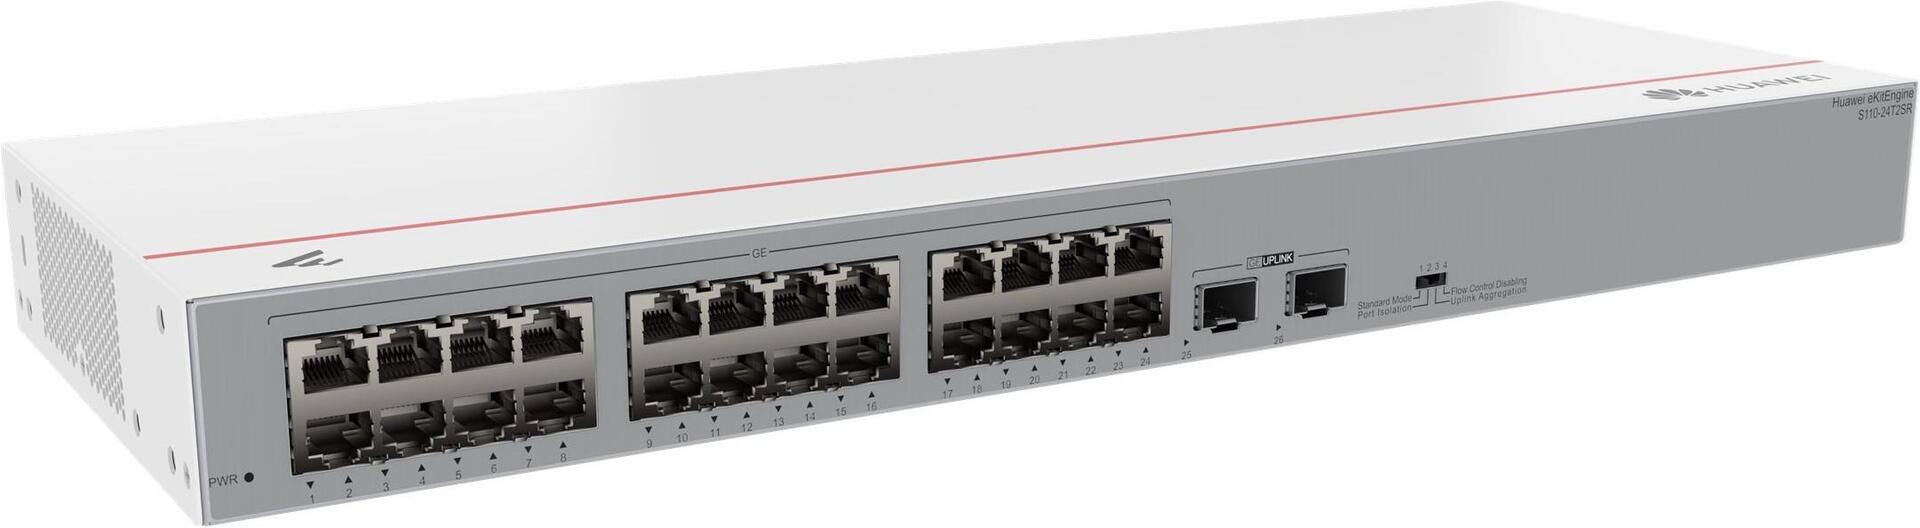 HUAWEI Switch S110-24T2SR 24x10/100/1000BASE-T ports 2xGE SFP ports AC power eKit DE (P) (98012196)